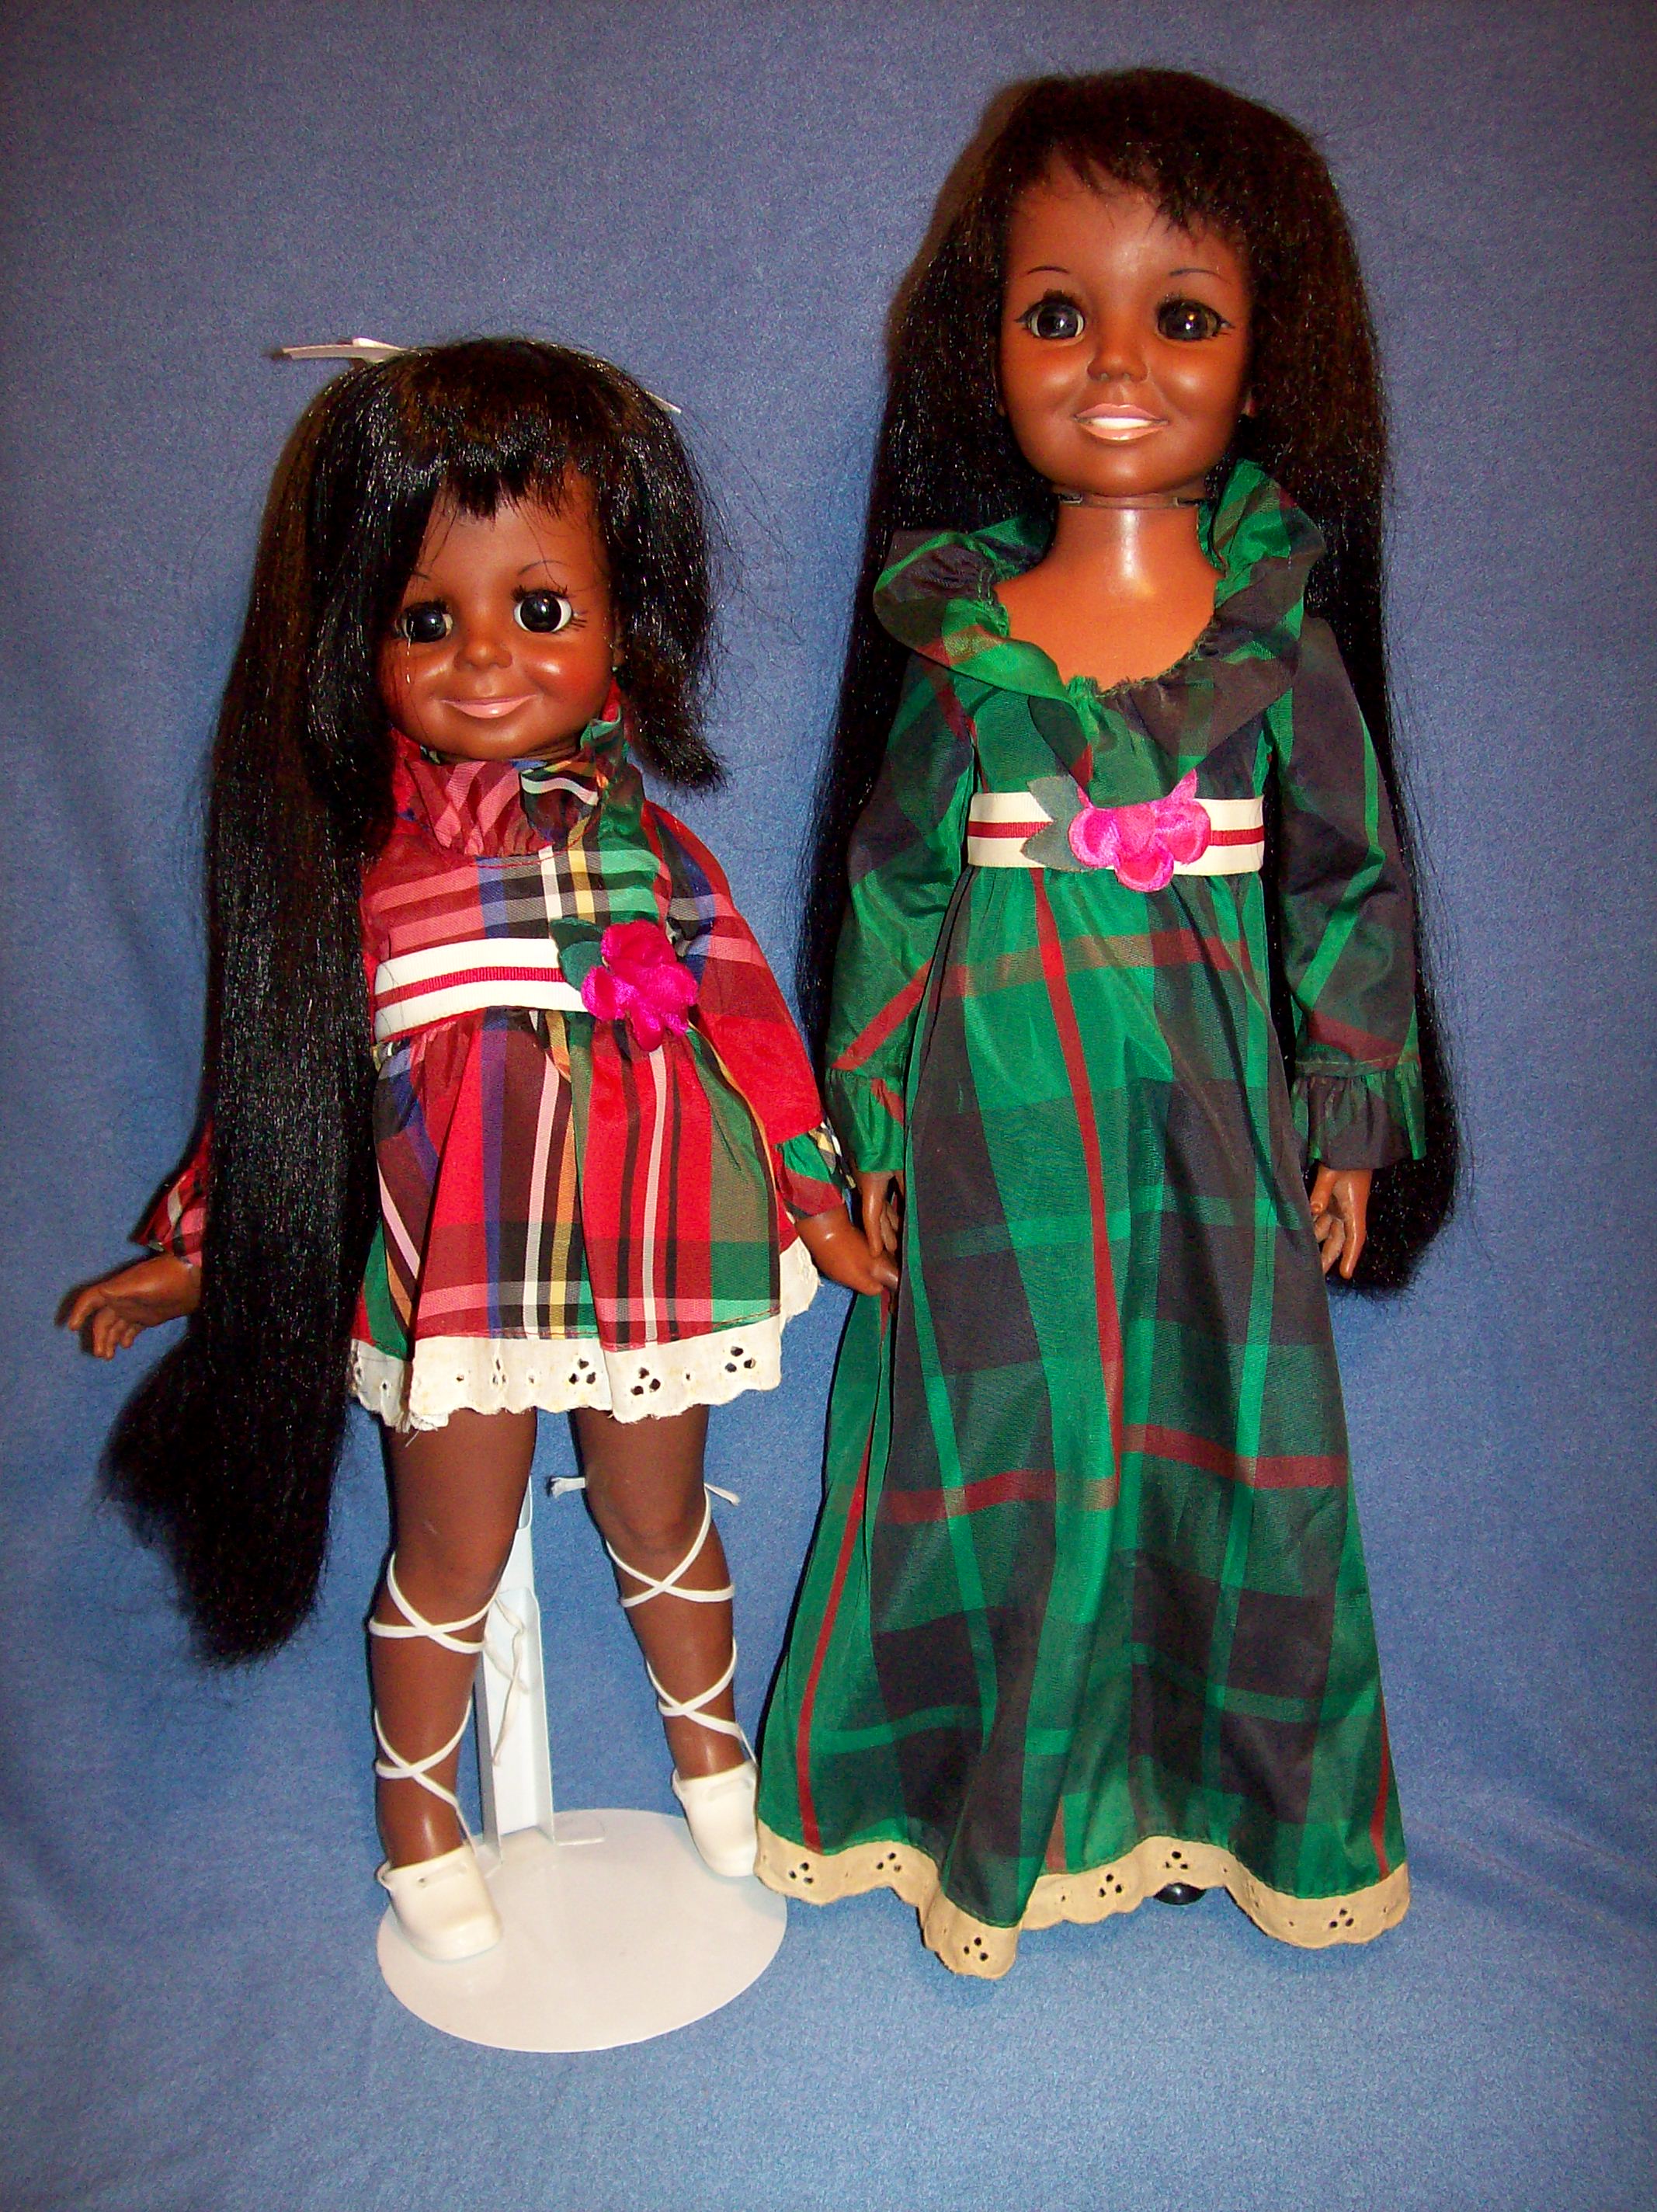 velvet and crissy dolls